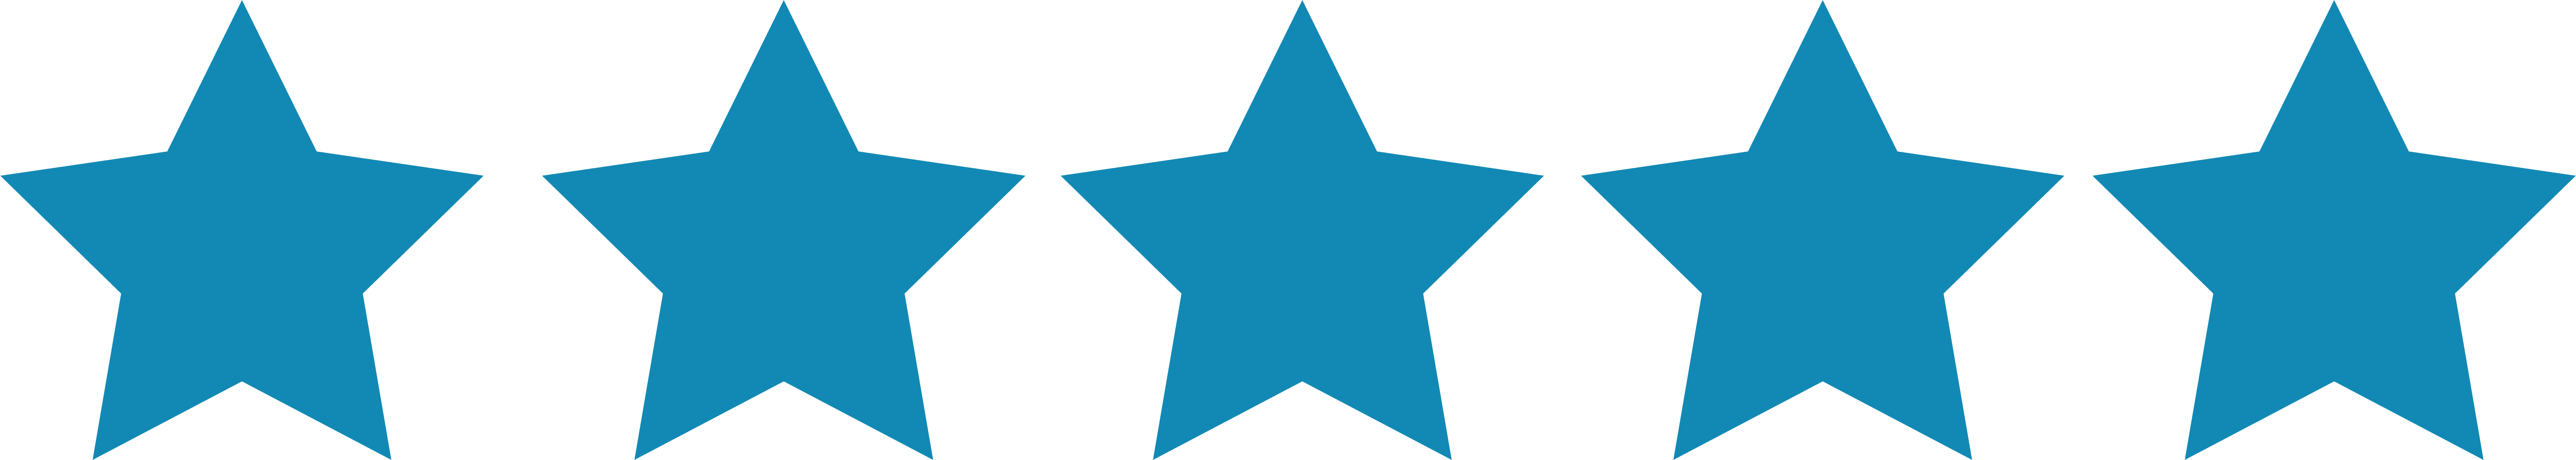 5 Stars - Blue Five Star Rating (5686x1015)